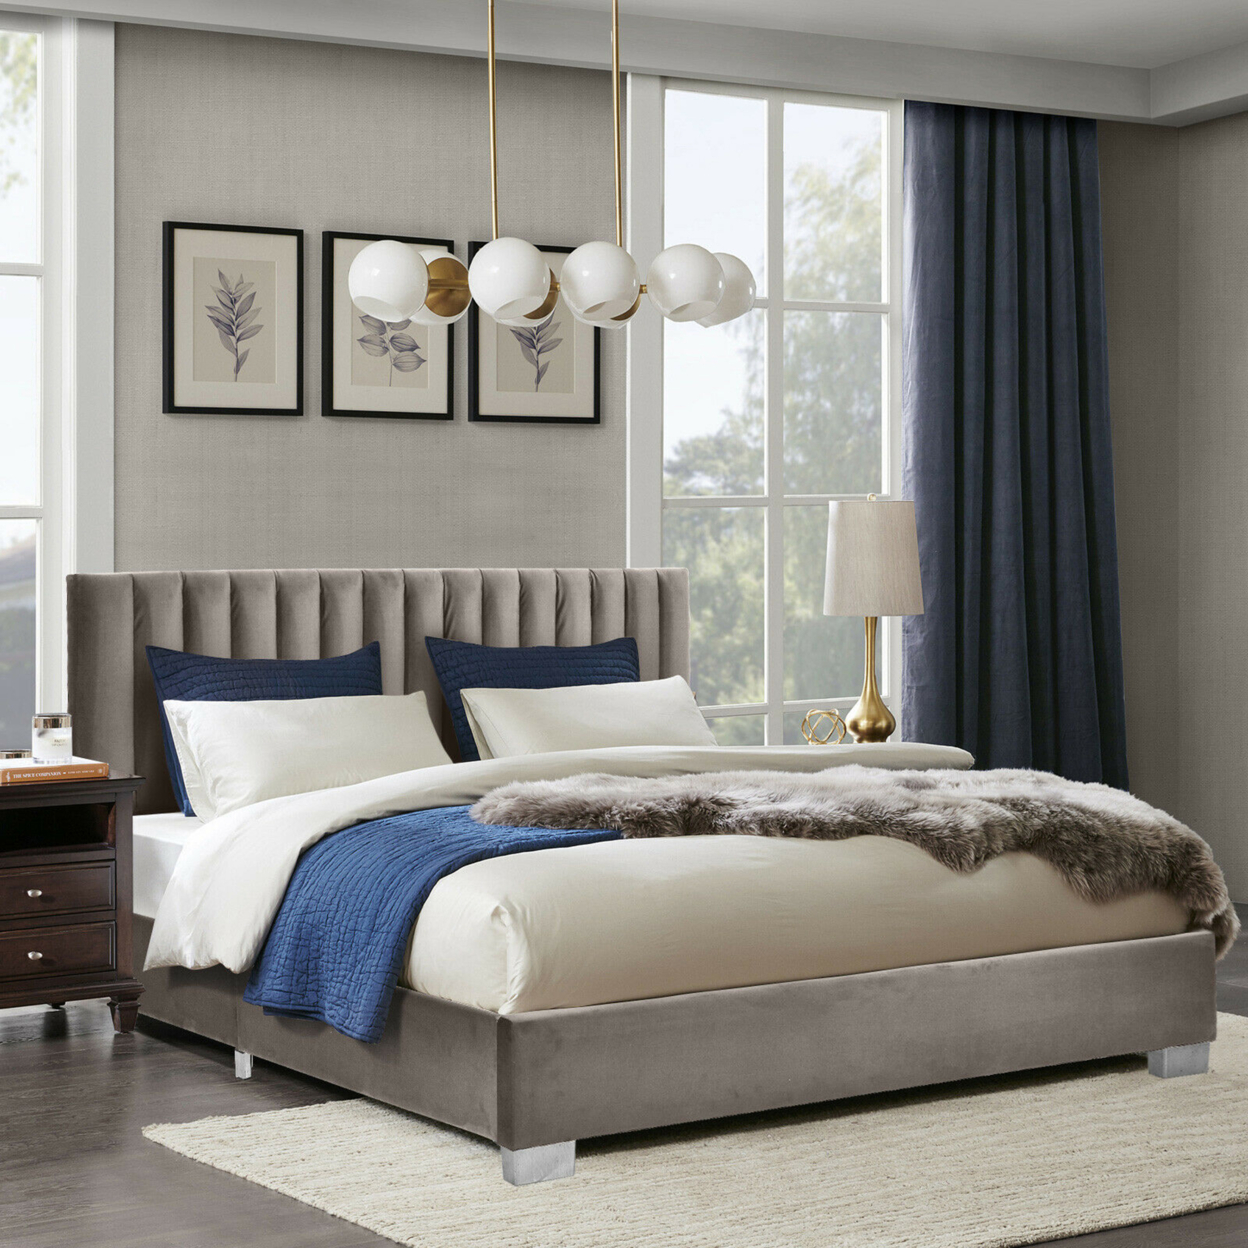 Full Tufted Upholstered Platform Bed Frame Flannel Headboard Light Grey